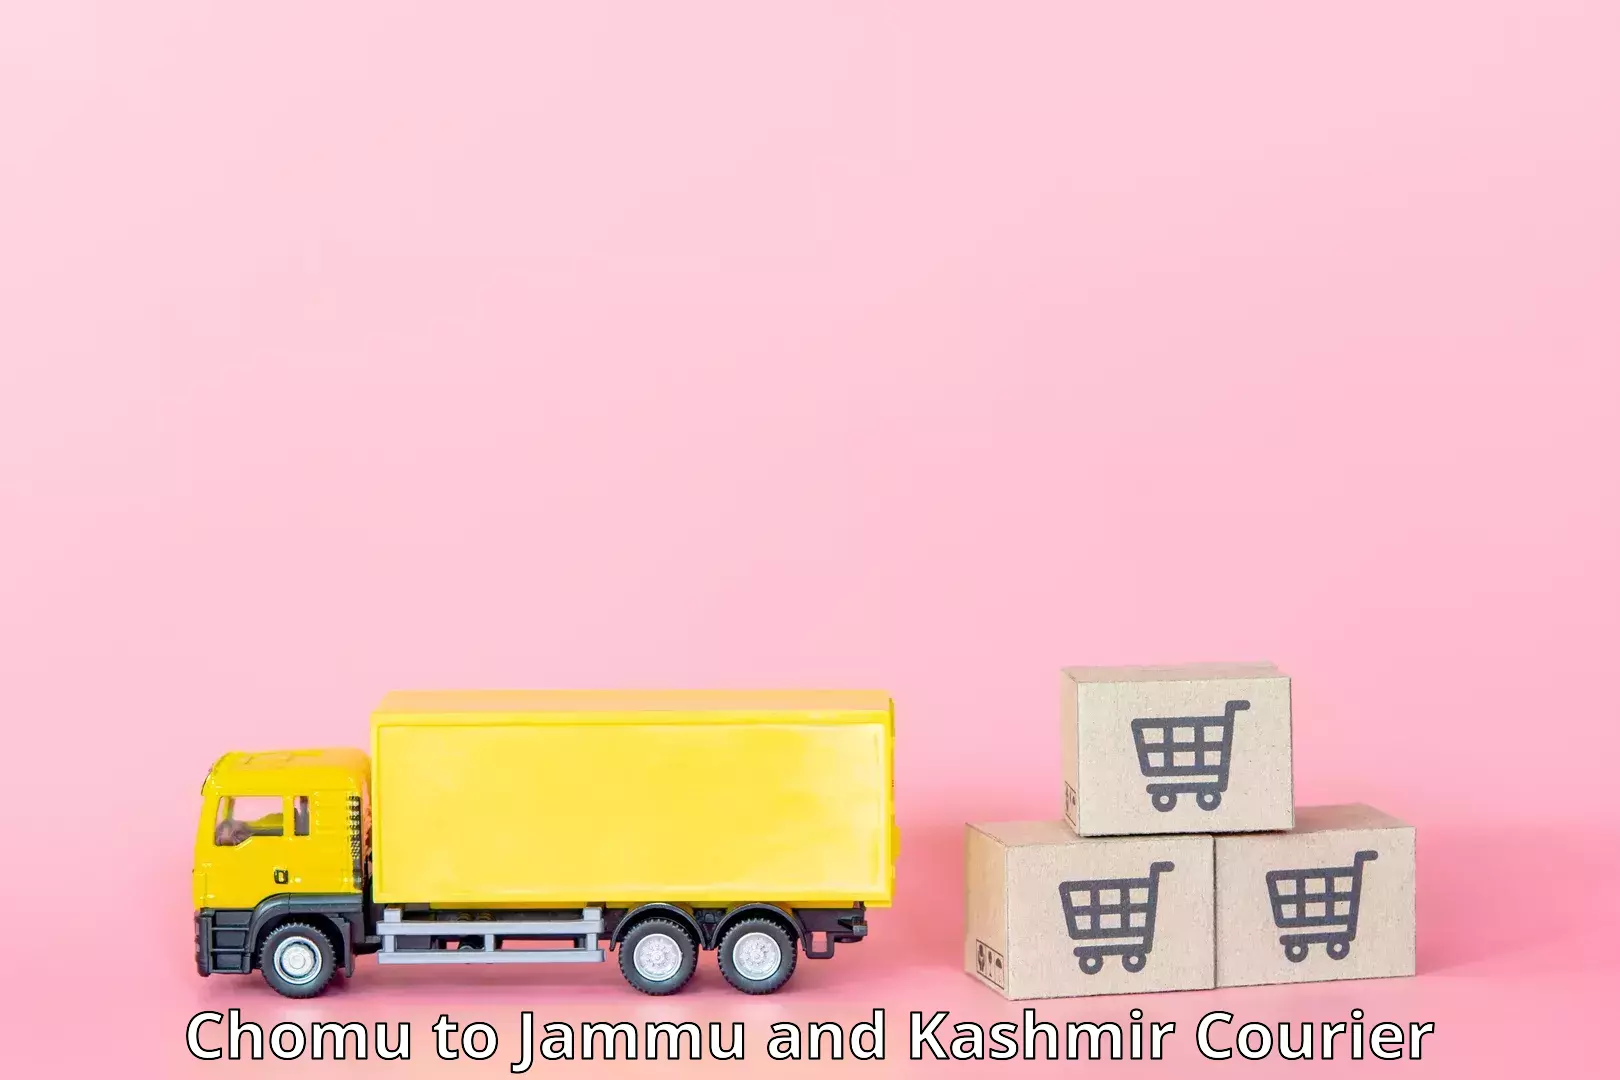 Logistics efficiency Chomu to Shopian